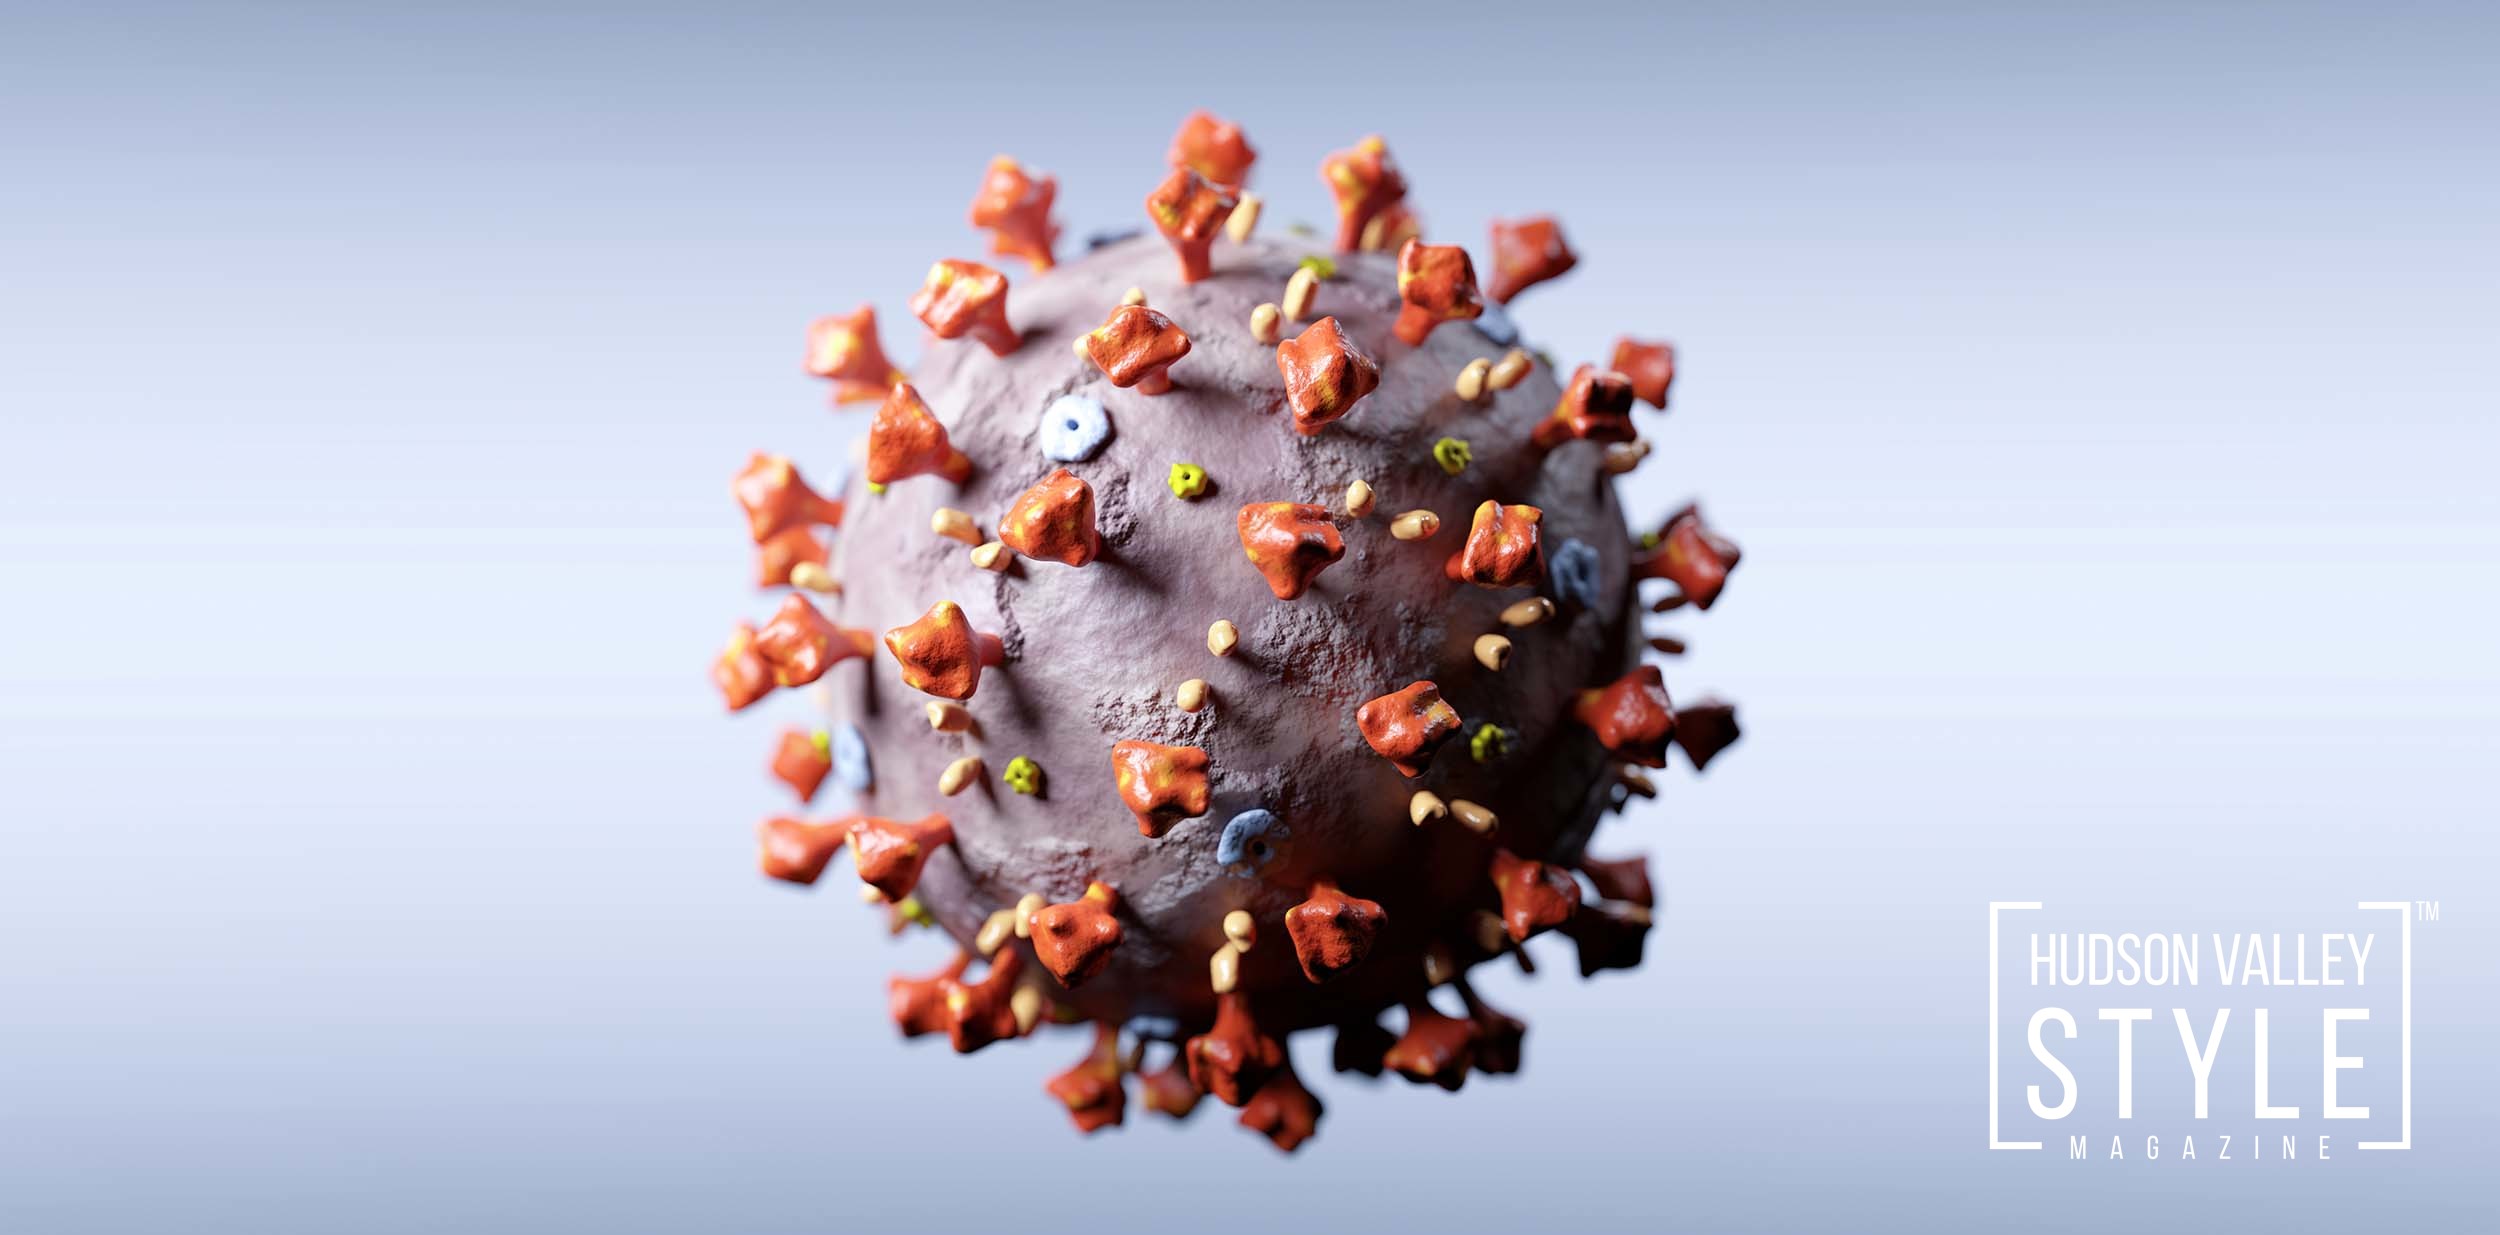 Coronavirus attack in microscopic view. Virus from Wuhan causing pandemic around the world. 3D rendering.